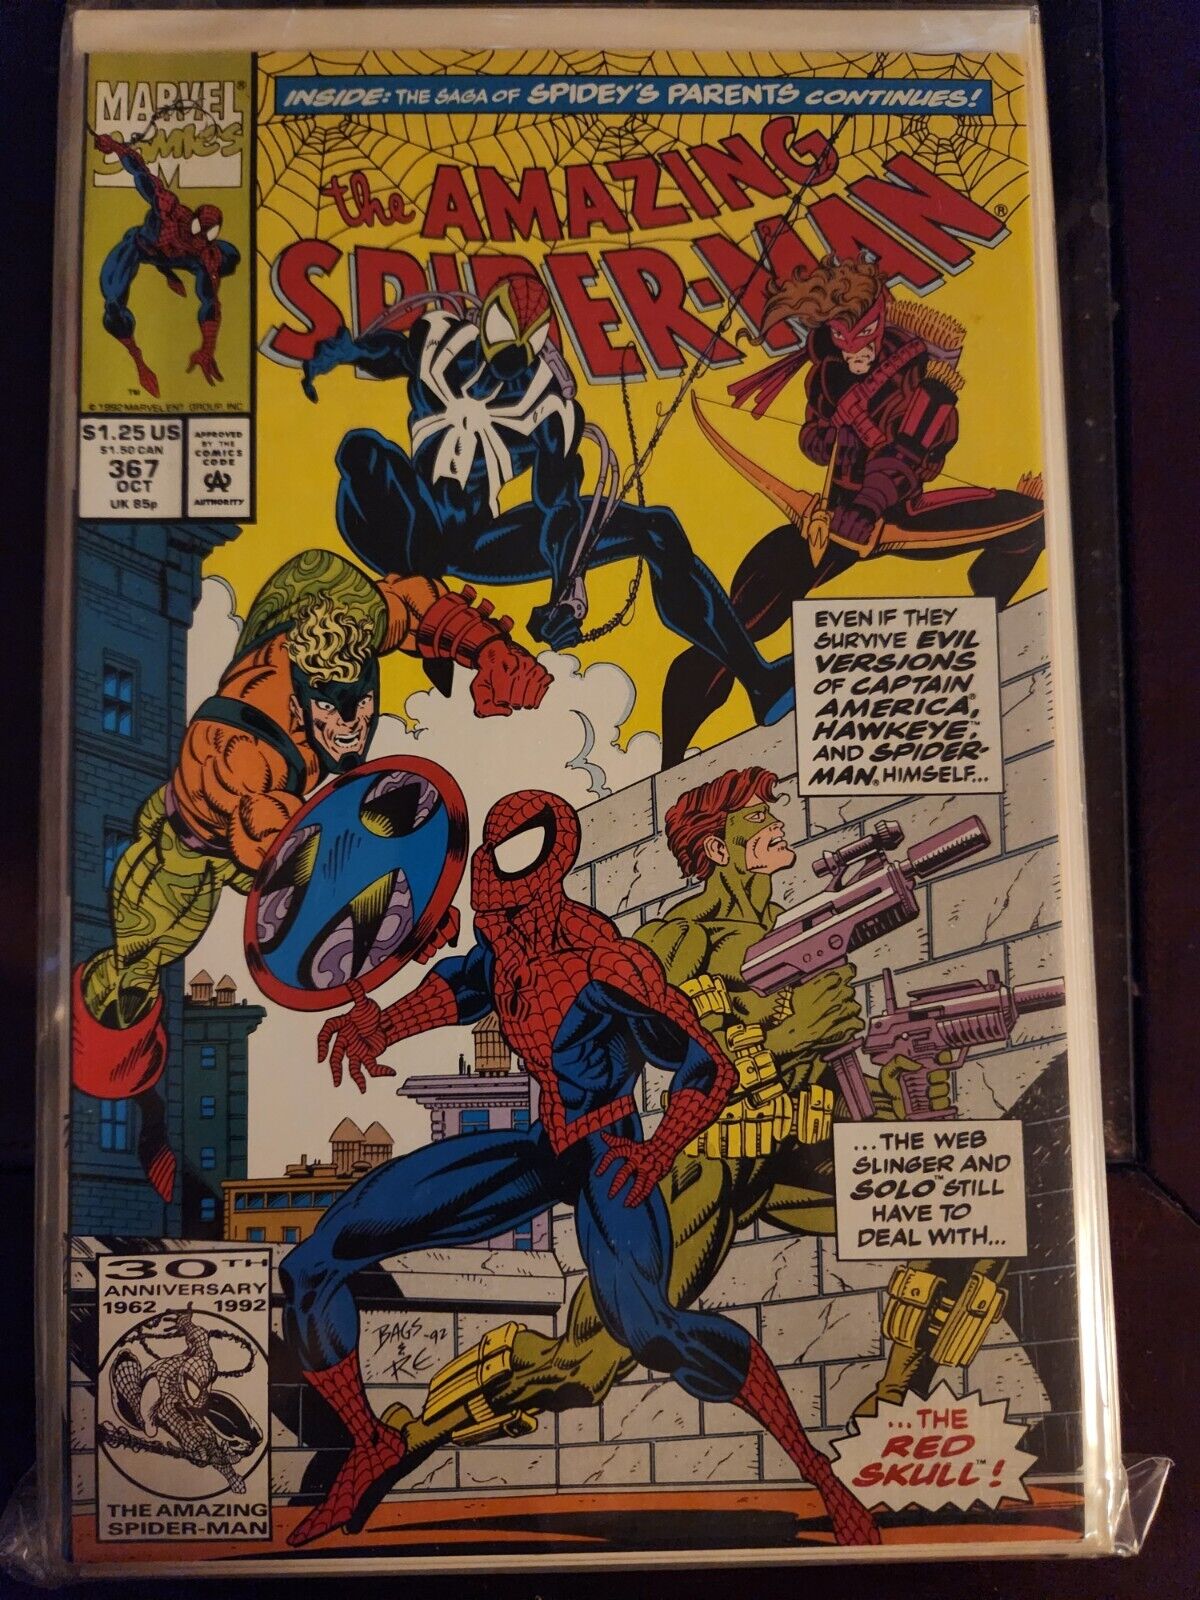 The Amazing Spider-Man #367 1992 MARVEL COMIC BOOK 9.4 AVG V41-51